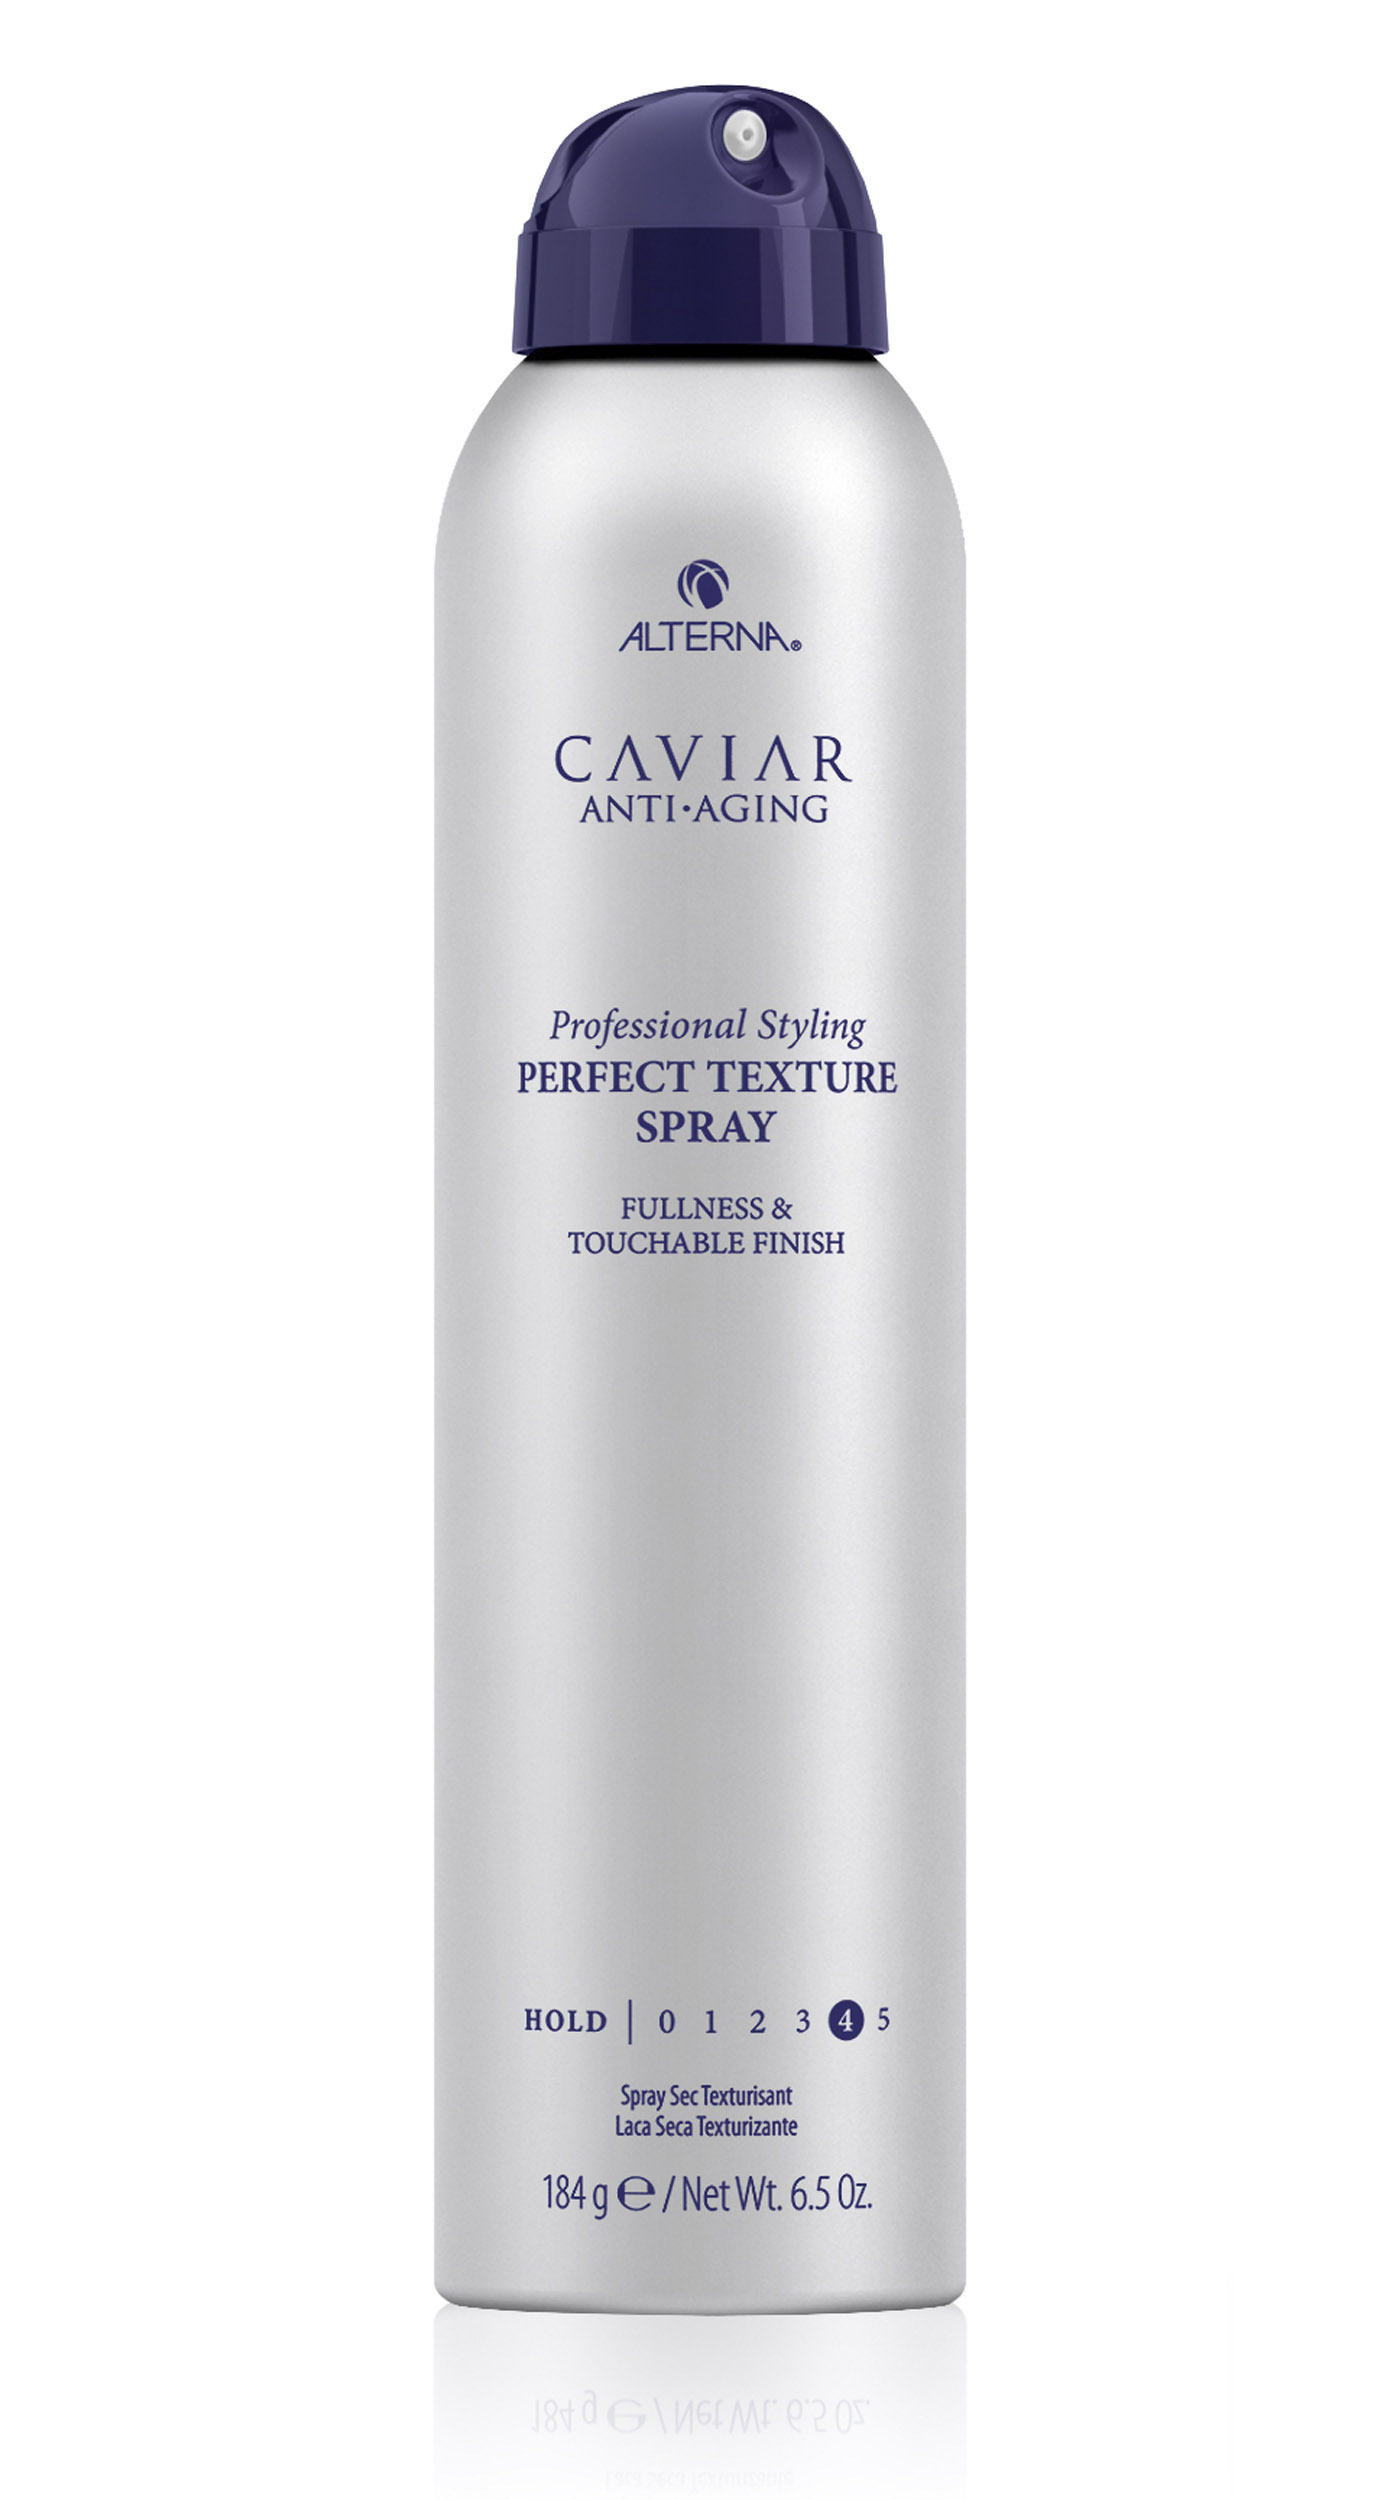 Alterna Текстурирующий спрей для идеальных укладок с антивозрастным уходом Caviar Anti-Aging Professional Styling Perfect Texture Spray, 184 г (Alterna, Professional Styling)